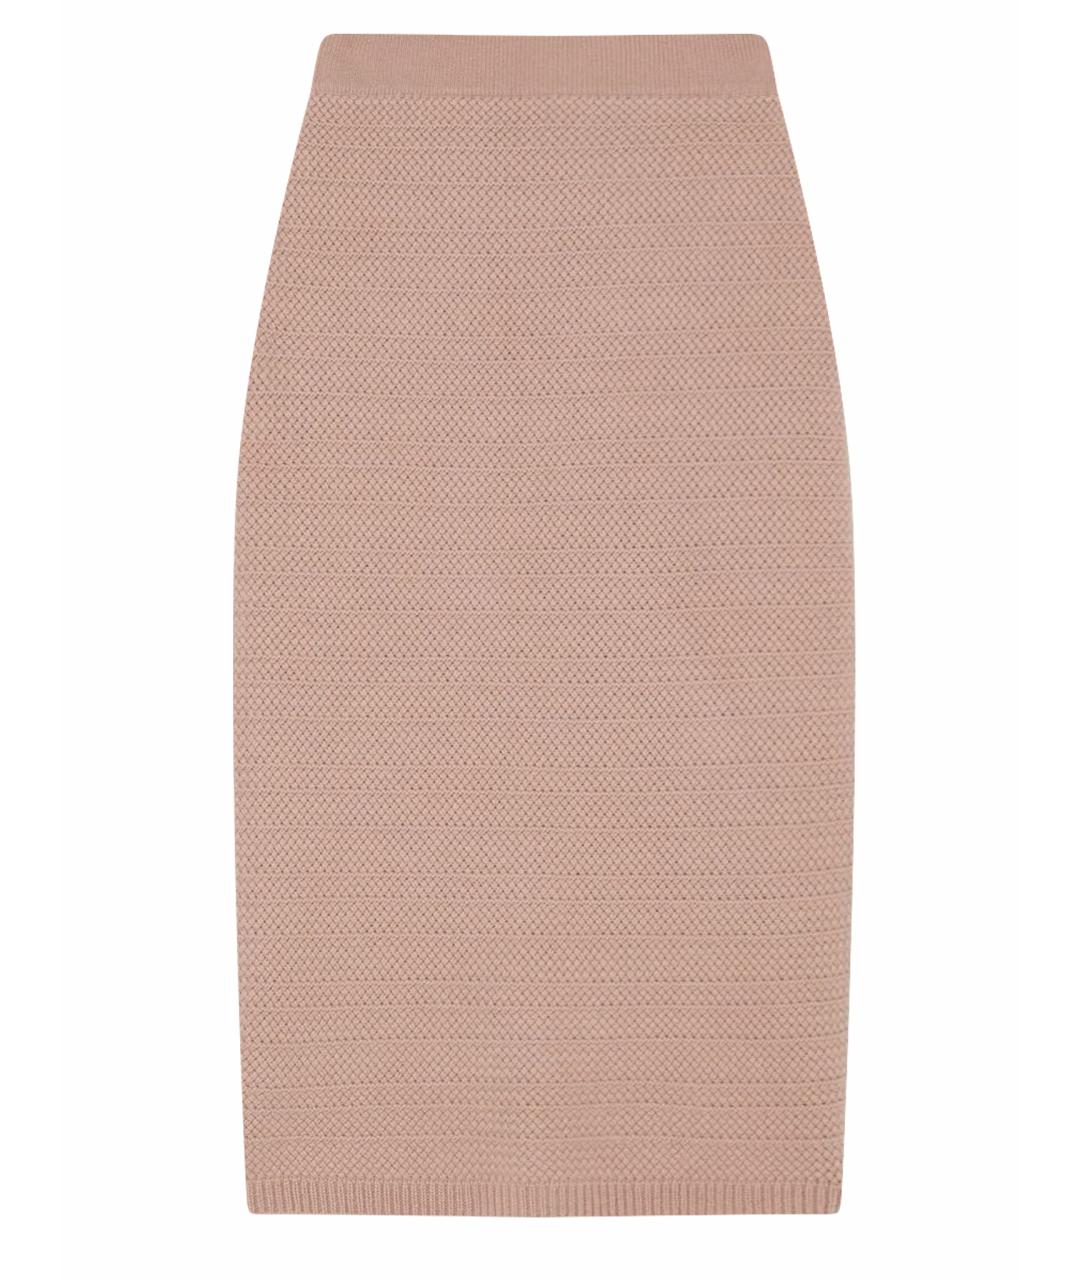 ARCH & LINE Розовая кашемировая юбка миди, фото 1